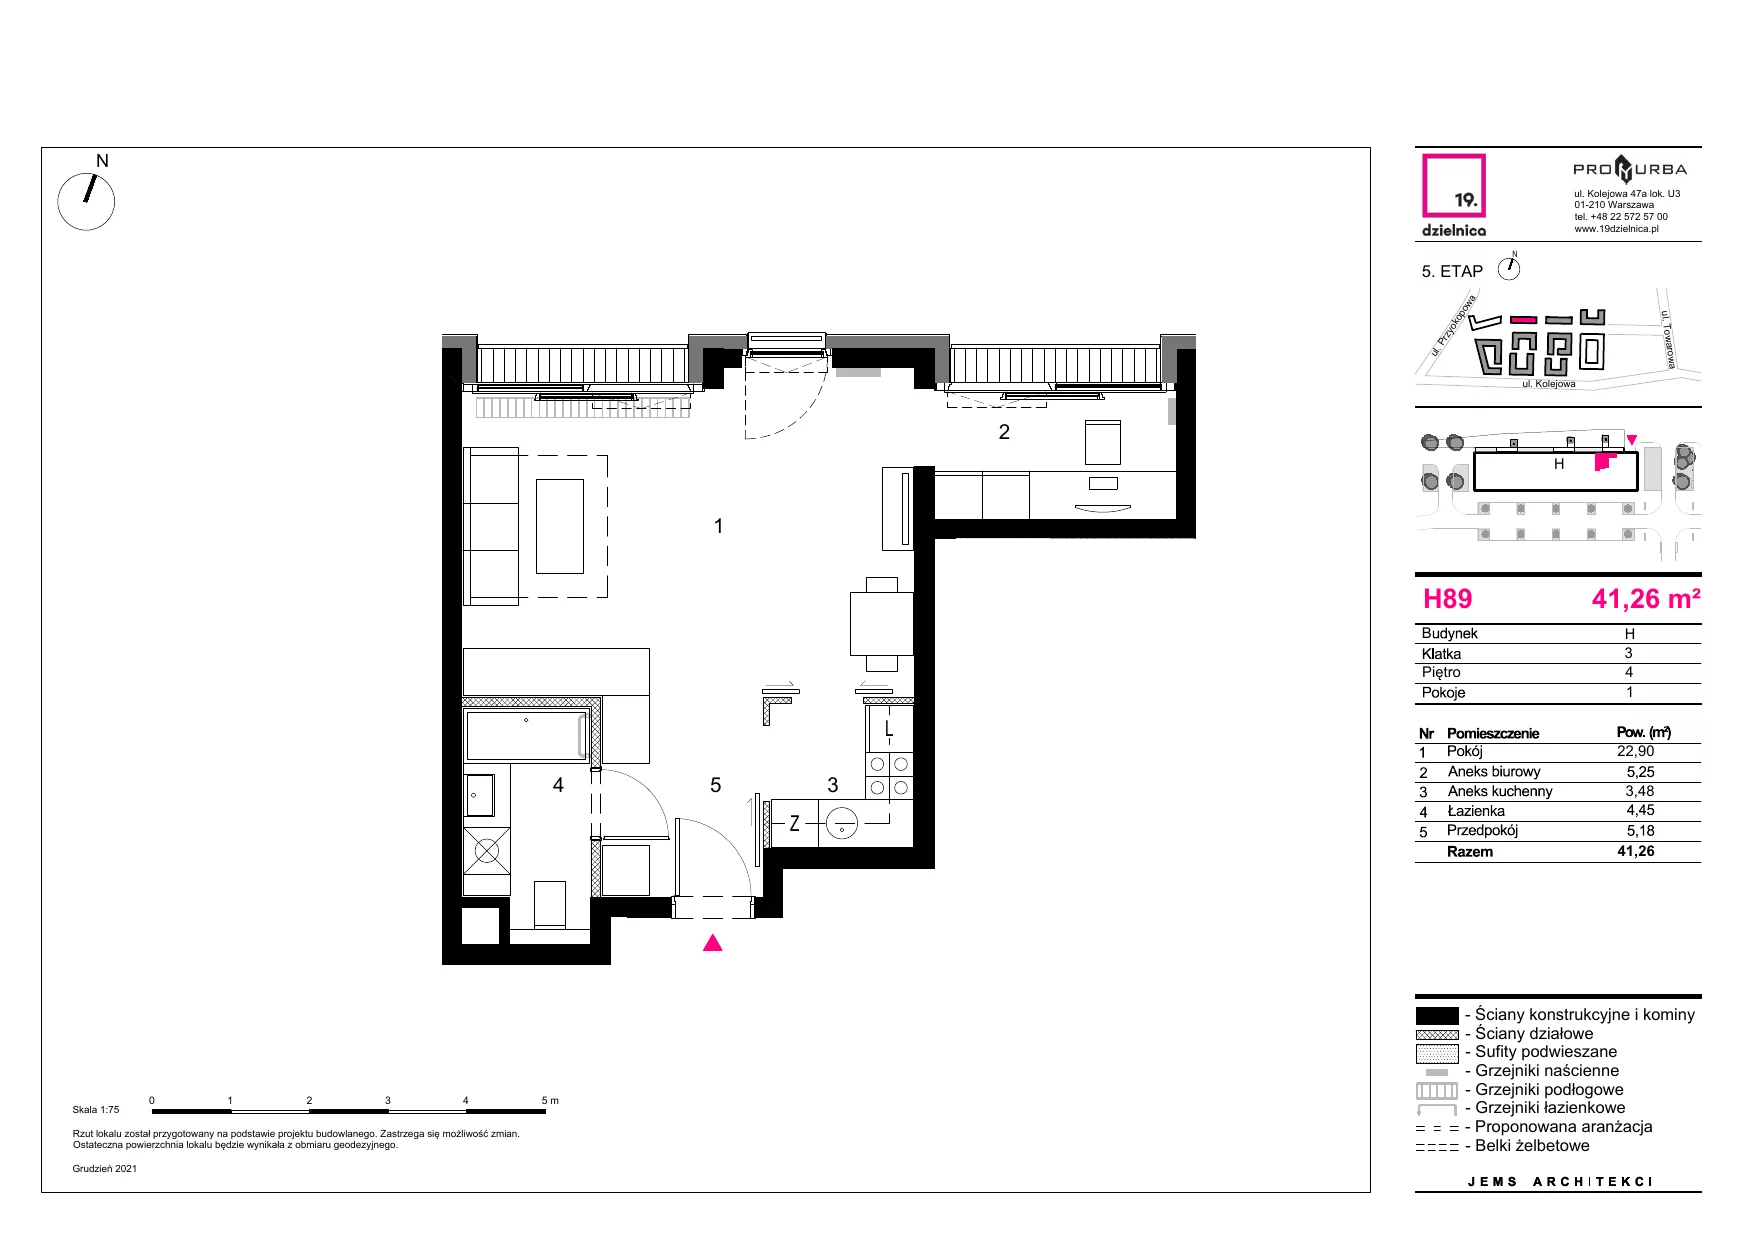 Mieszkanie 41,26 m², piętro 4, oferta nr H89, 19. Dzielnica V etap, Warszawa, Wola, Czyste, ul. Kolejowa 49